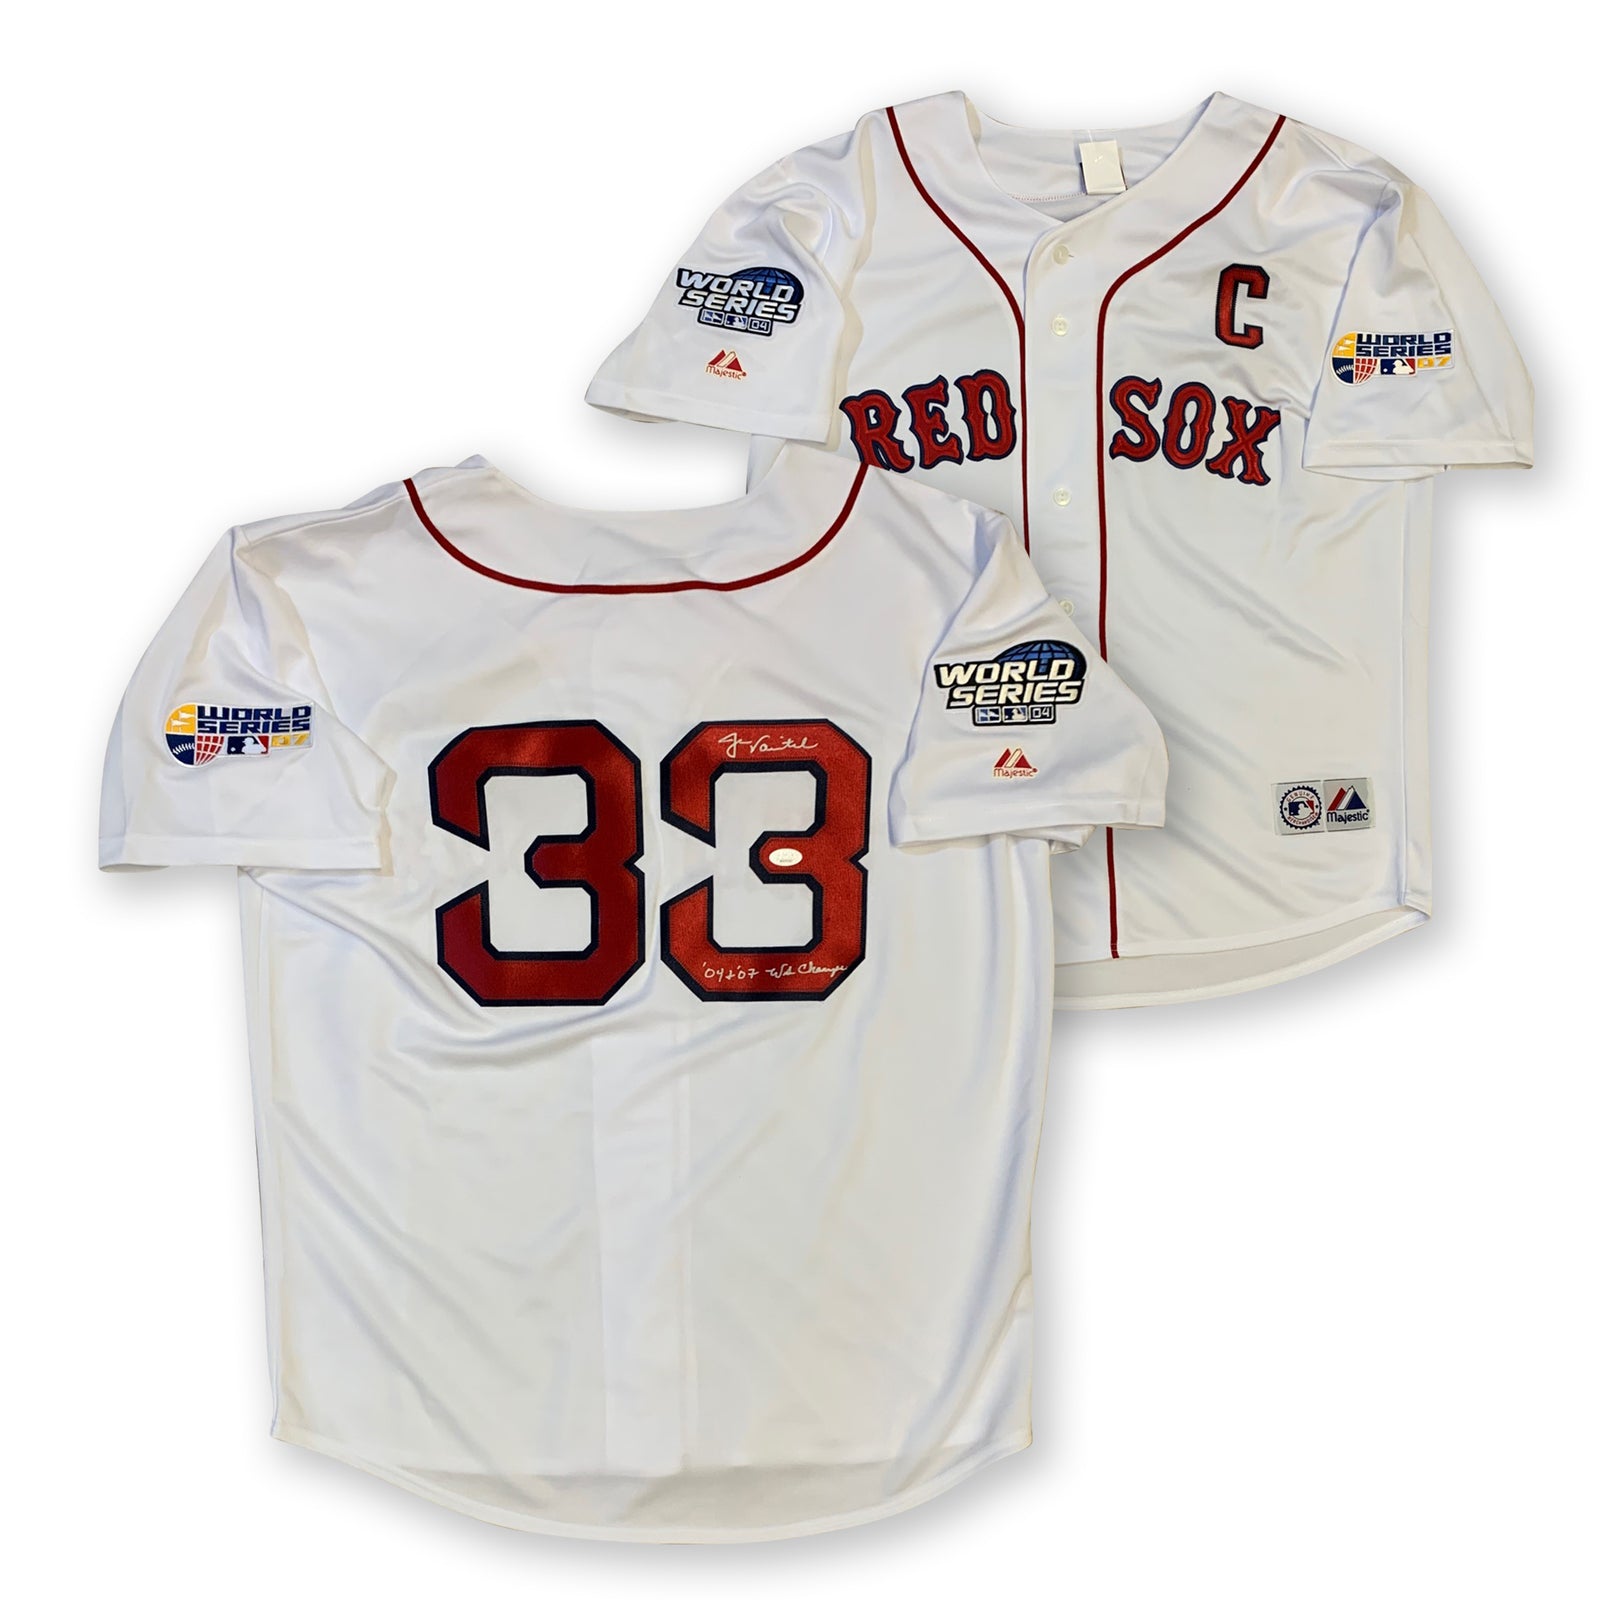 Boston Red Sox Sports Memorabilia